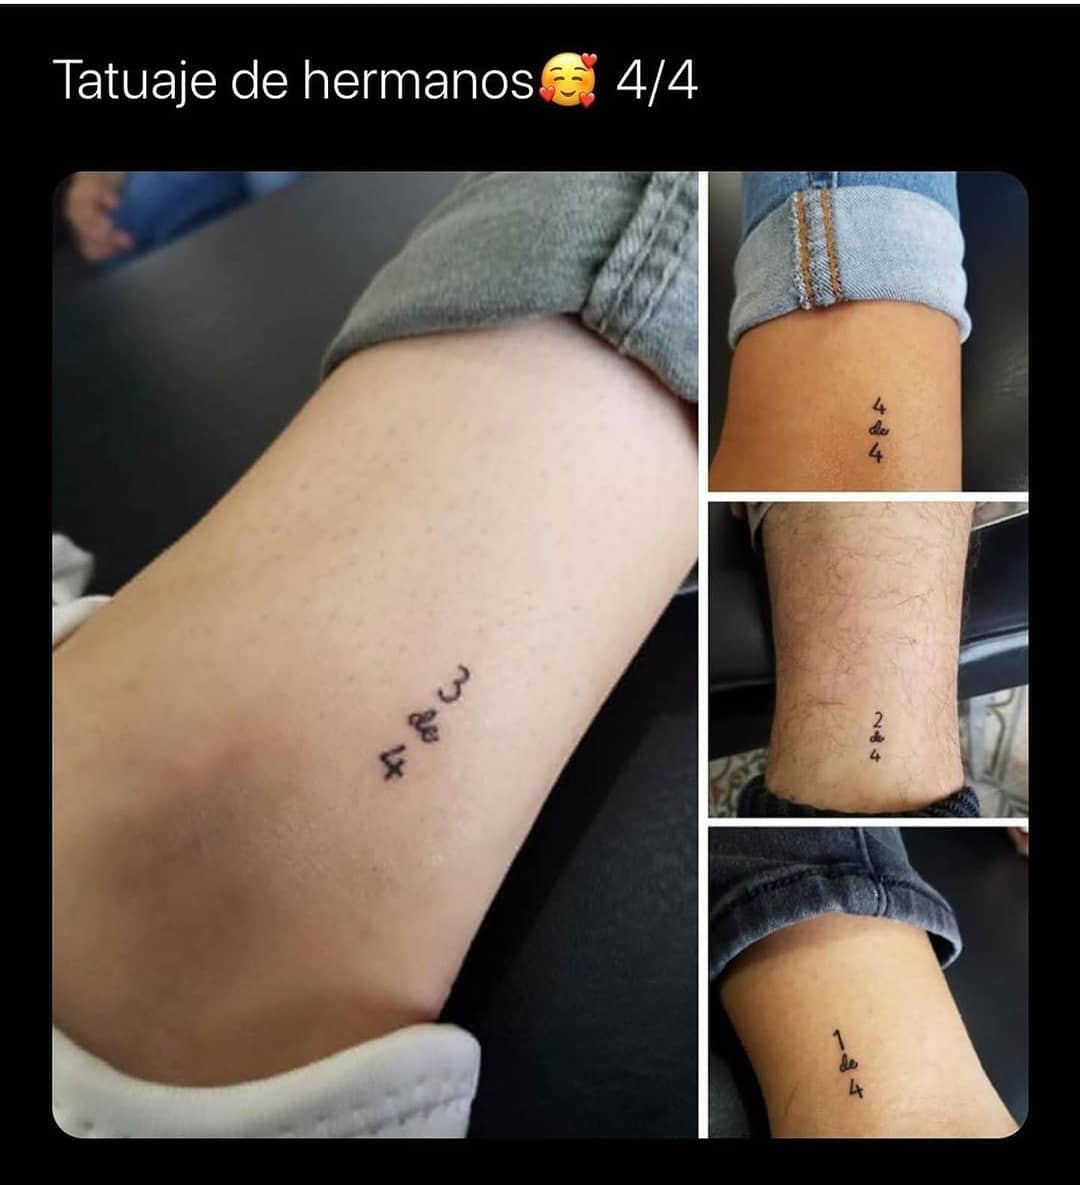 Tatuaje de hermanos 4/4.